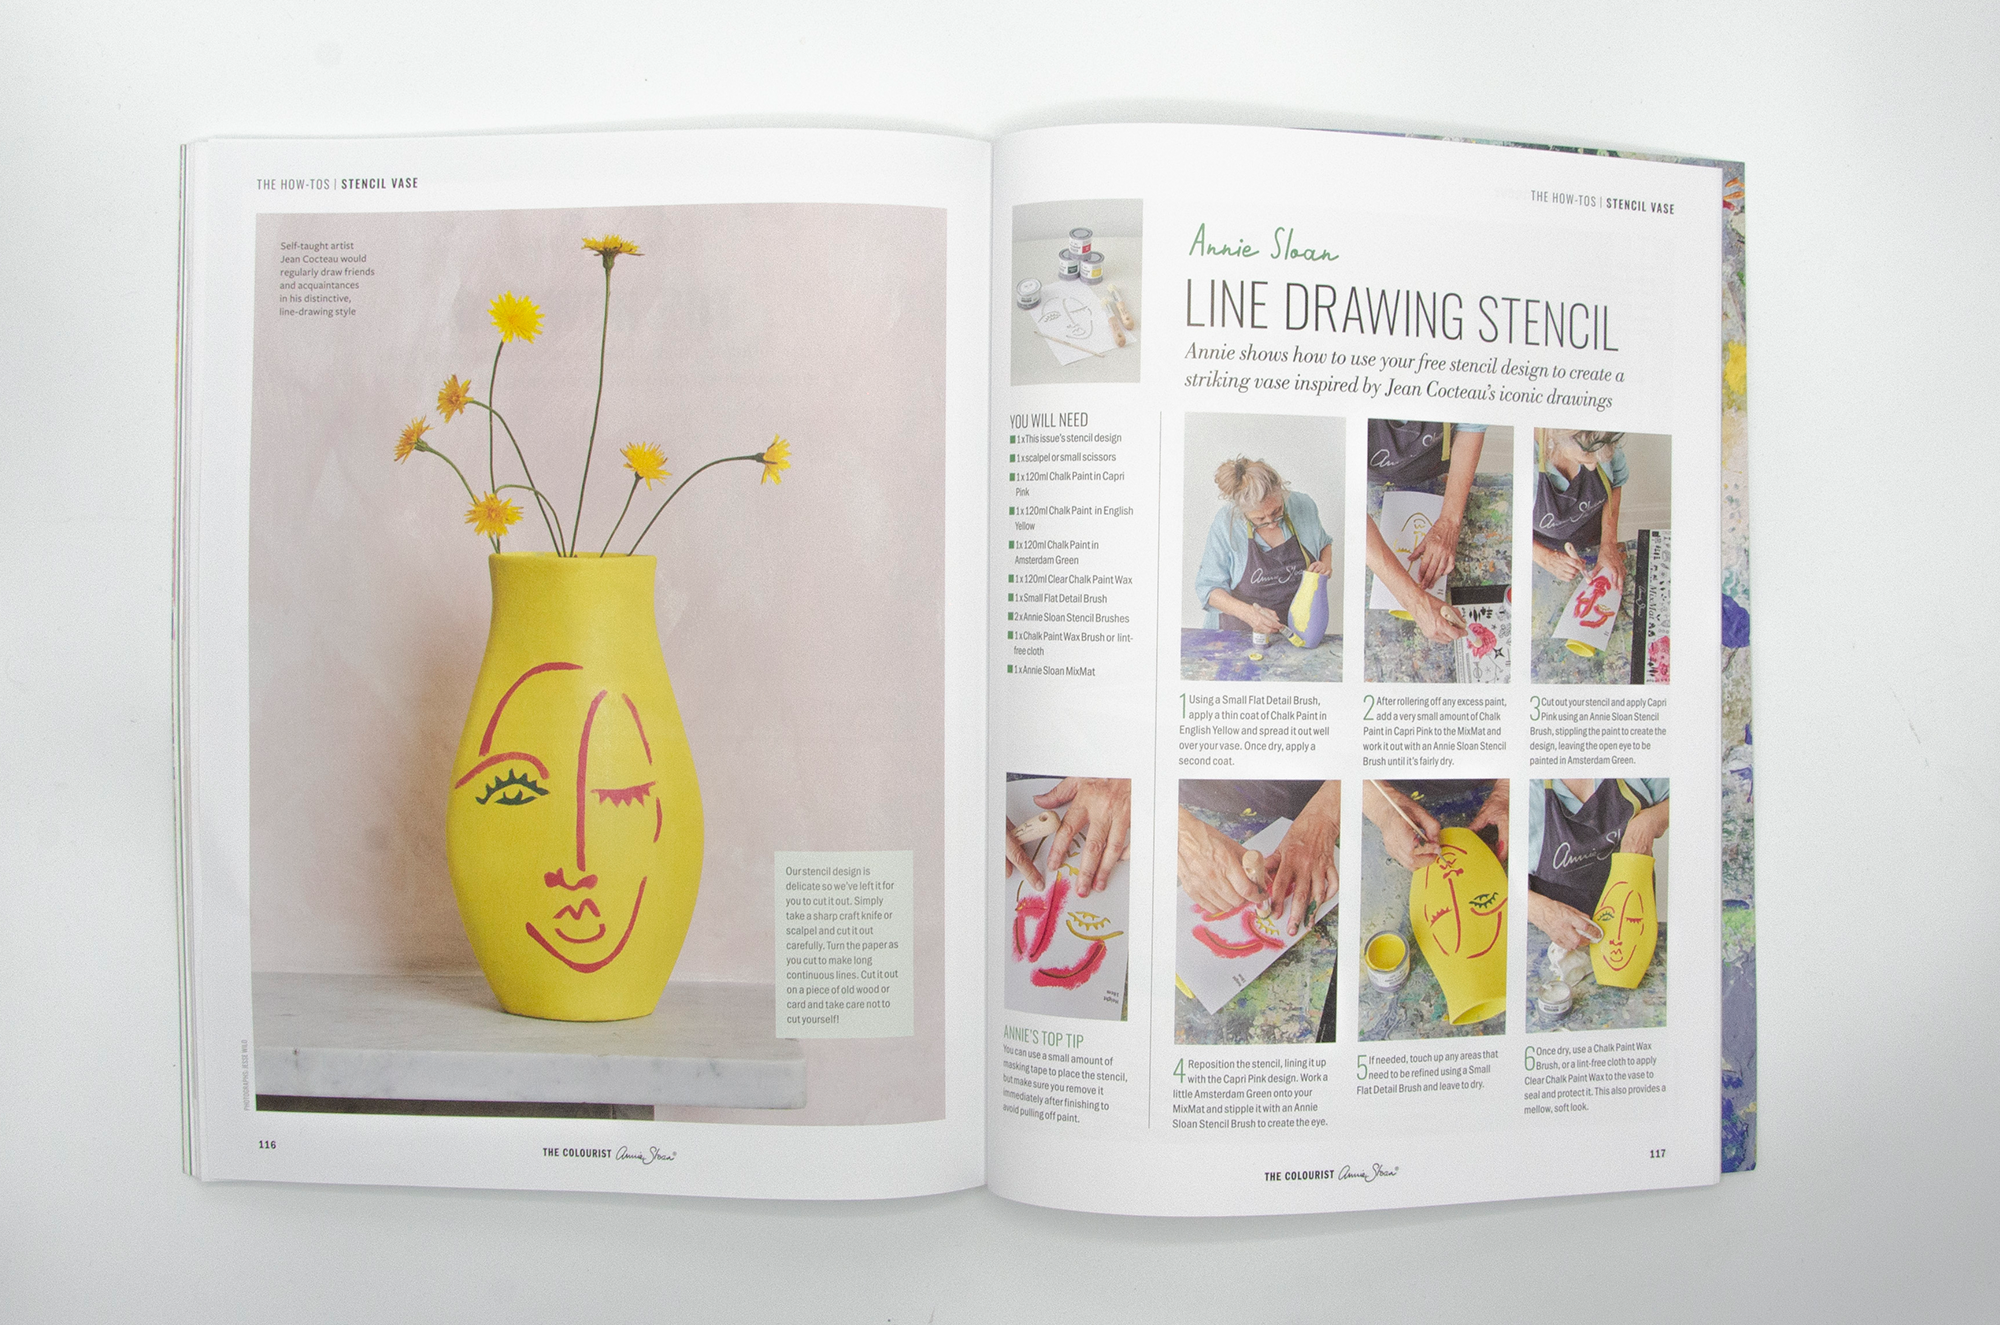 časopis o dizajne a bývaní Annie Sloan The Colourist 7